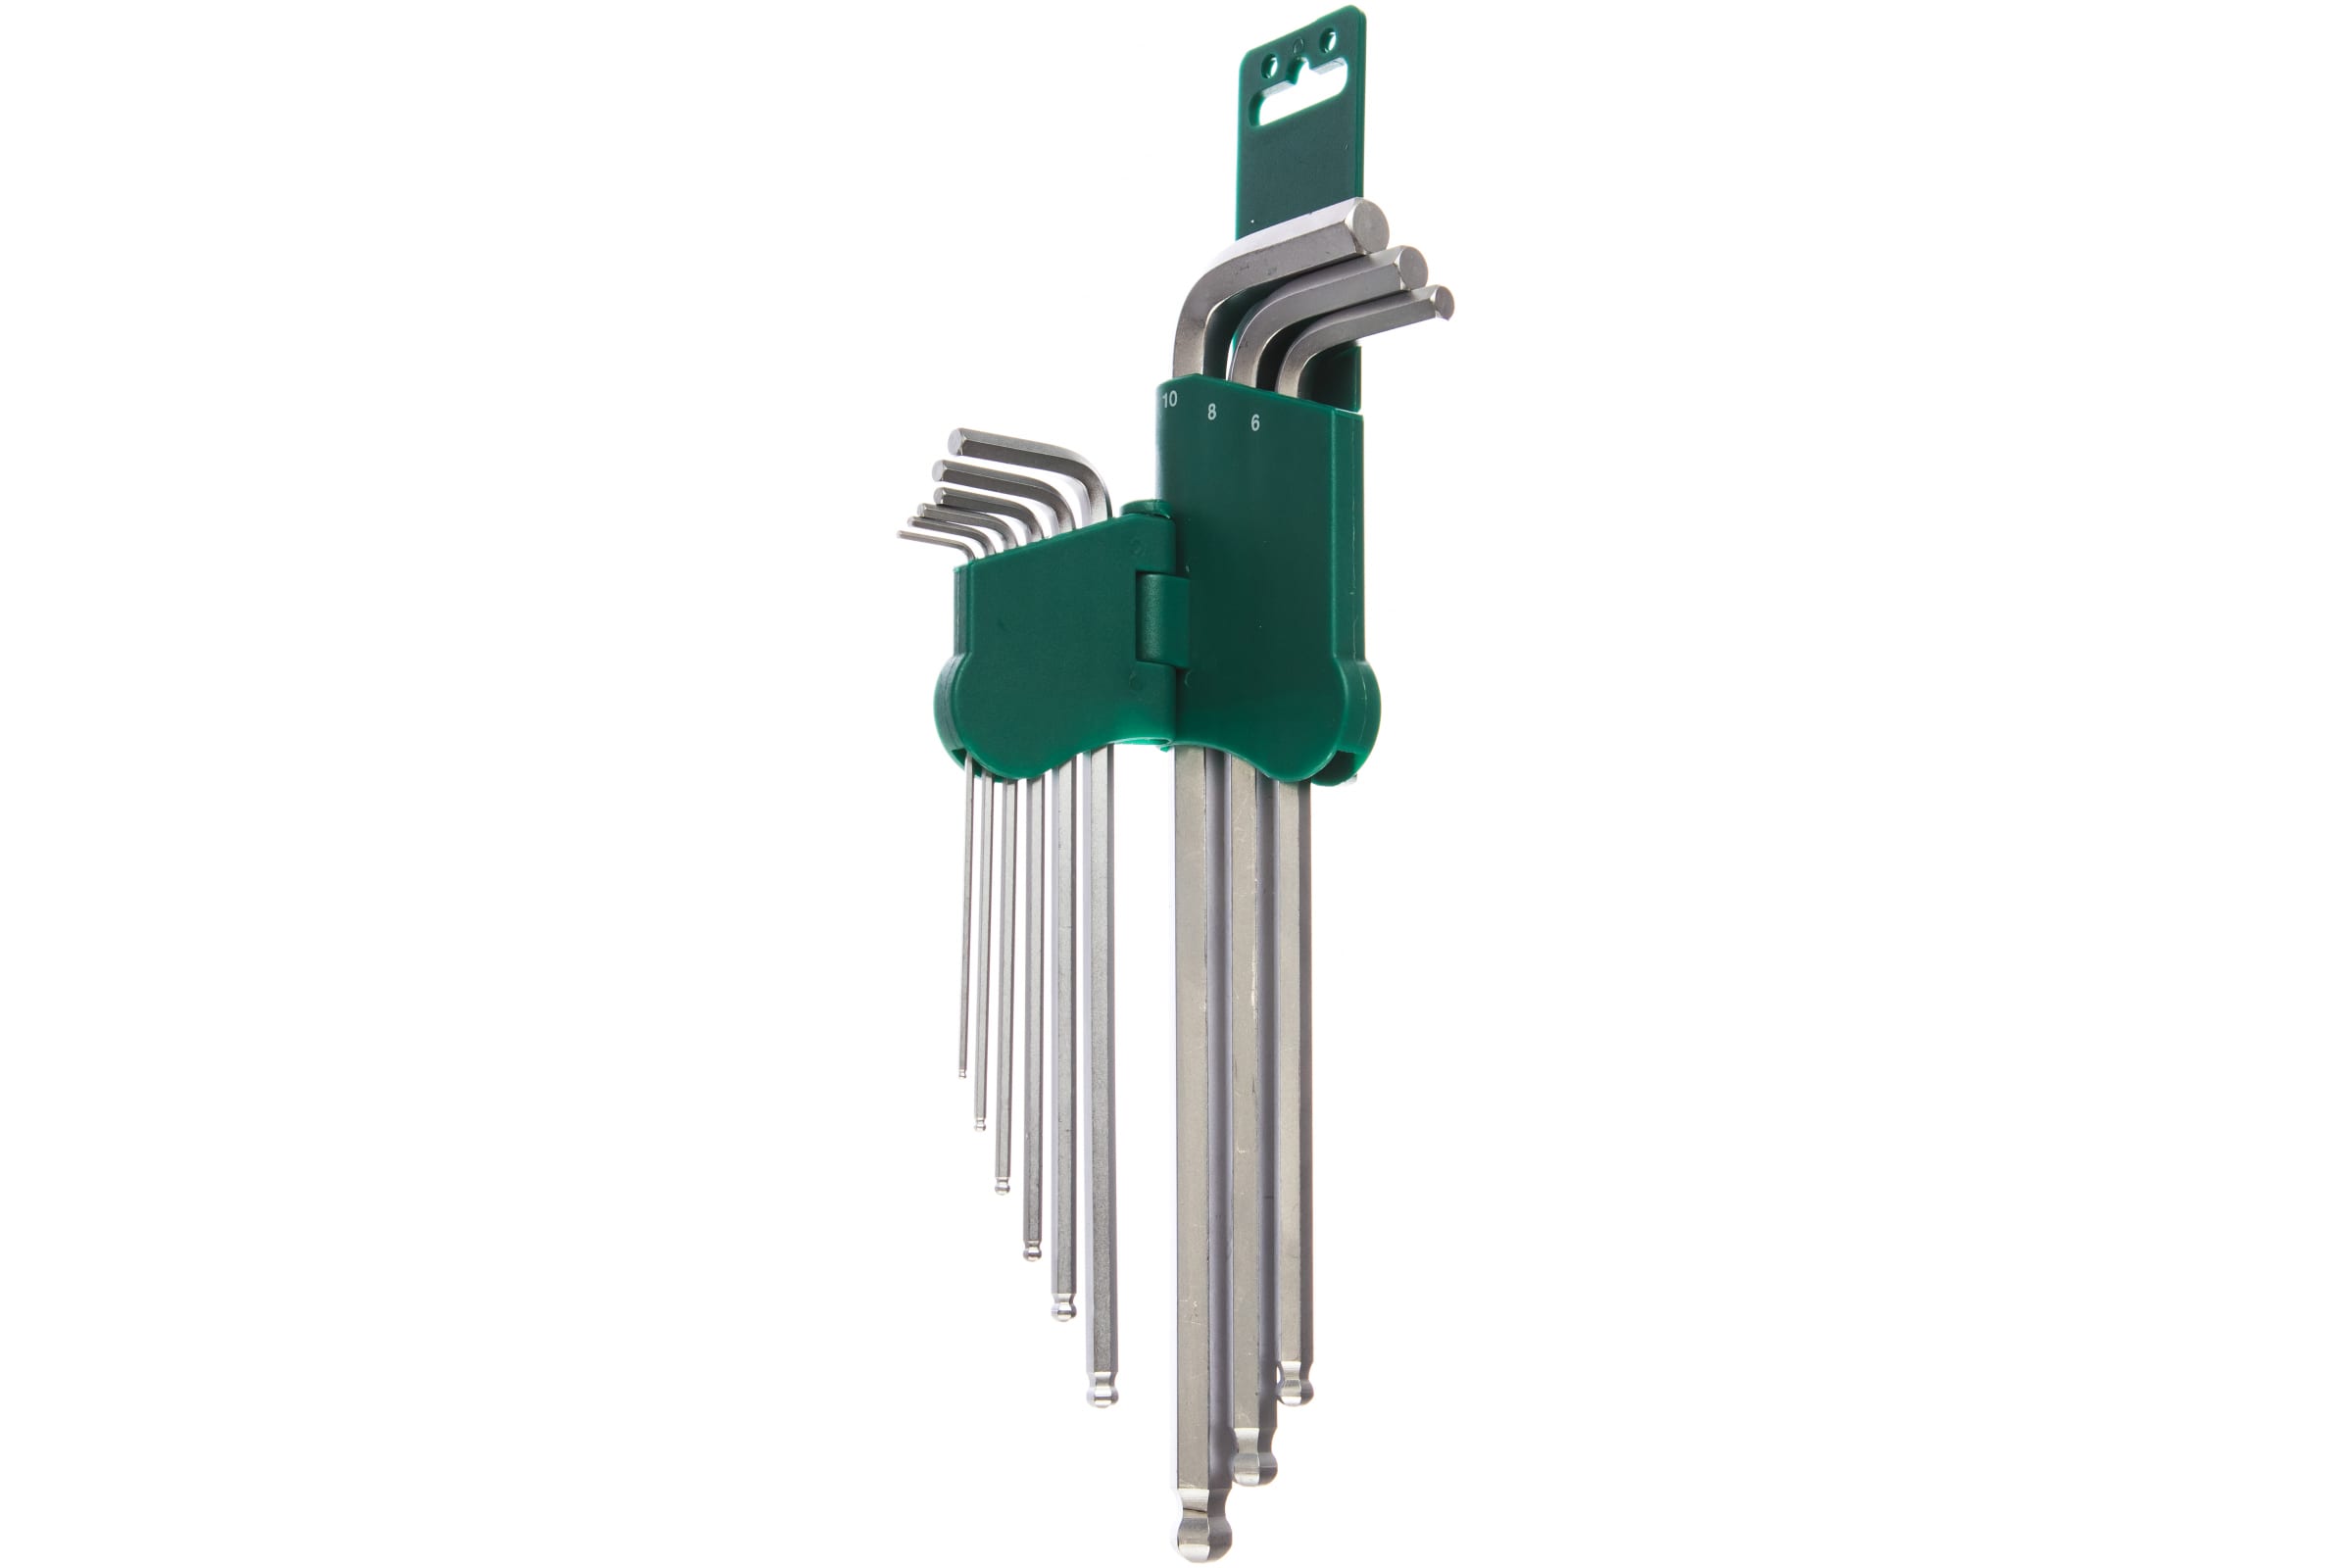 Комплект шестигранниых  ключей (1,5-10 мм) EXTRA LONG с шаром Jonnesway H05SM109SL, 9 штук - фото